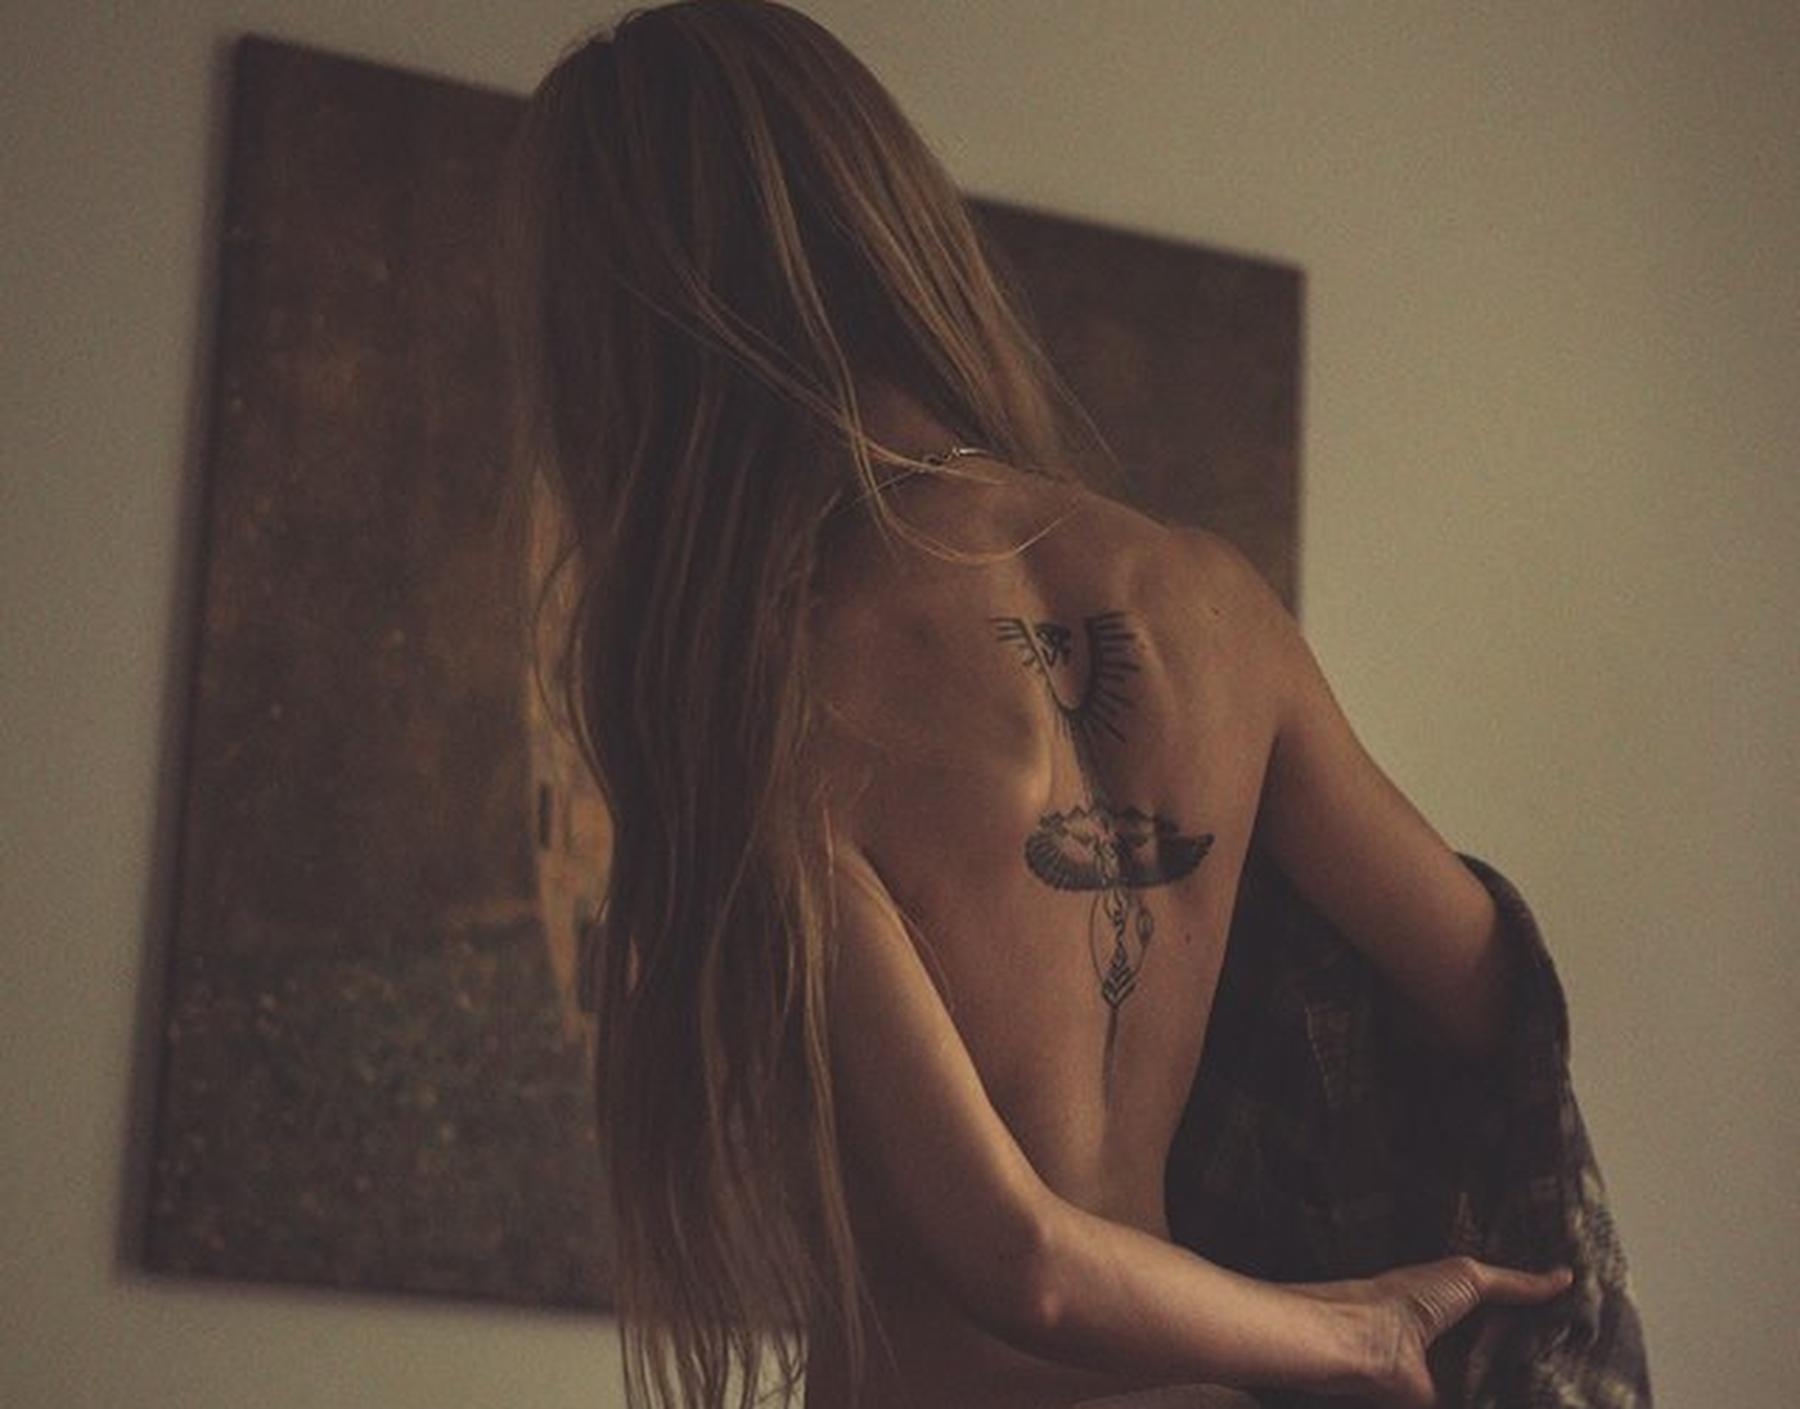 De bijzondere tattoo op de rug van Eline komt in de clip duidelijk in beeld.